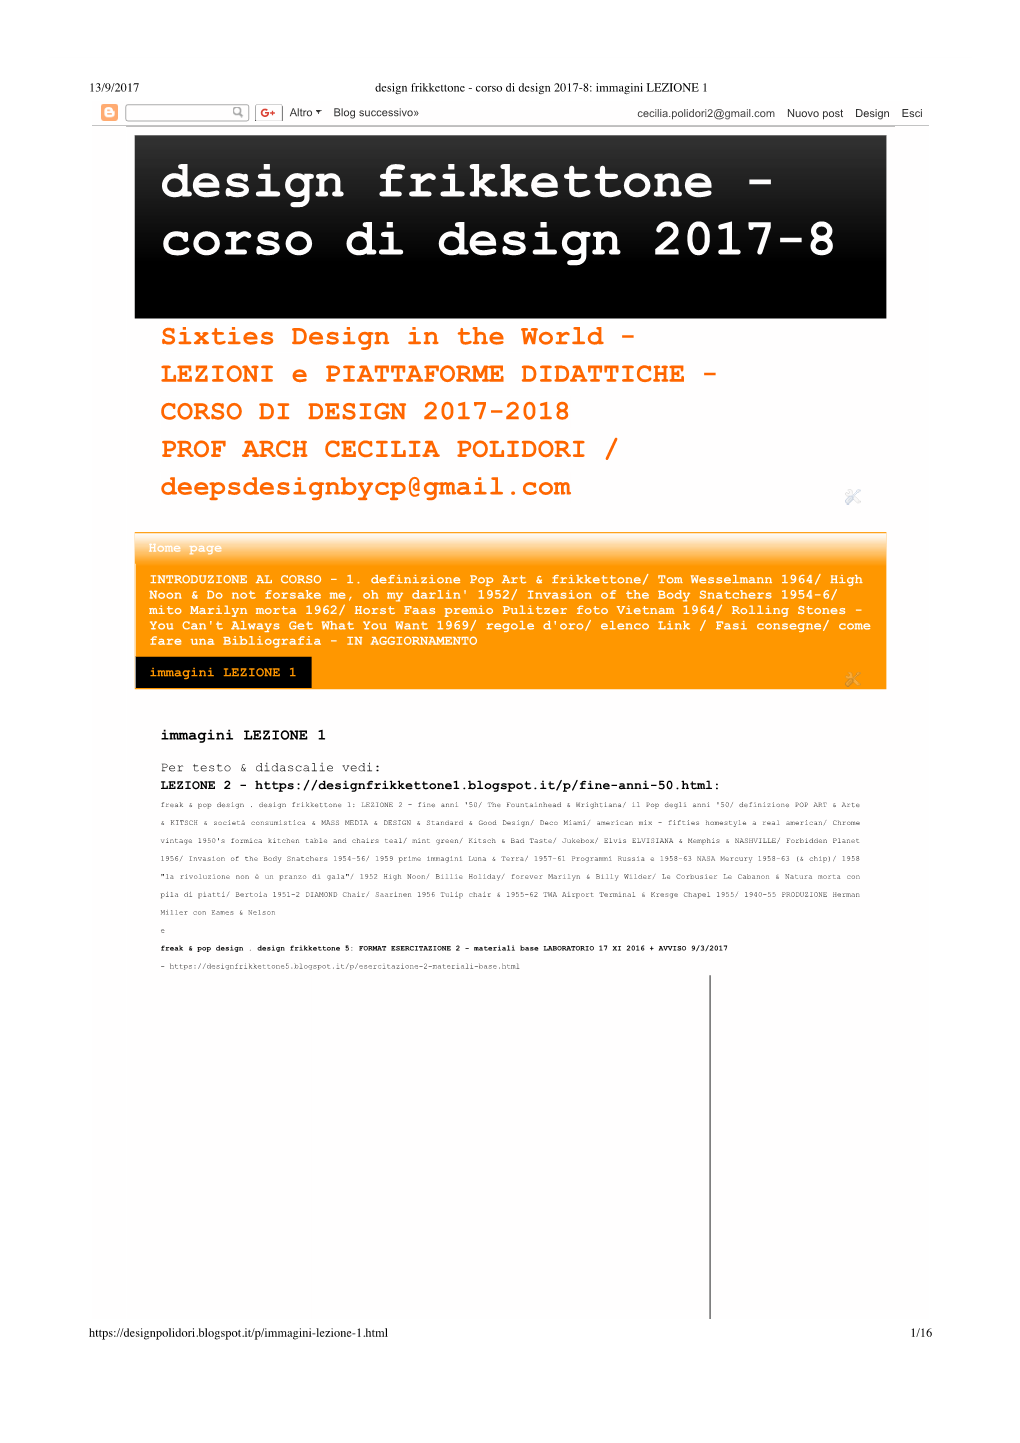 Design Frikkettone - Corso Di Design 2017-8: Immagini LEZIONE 1